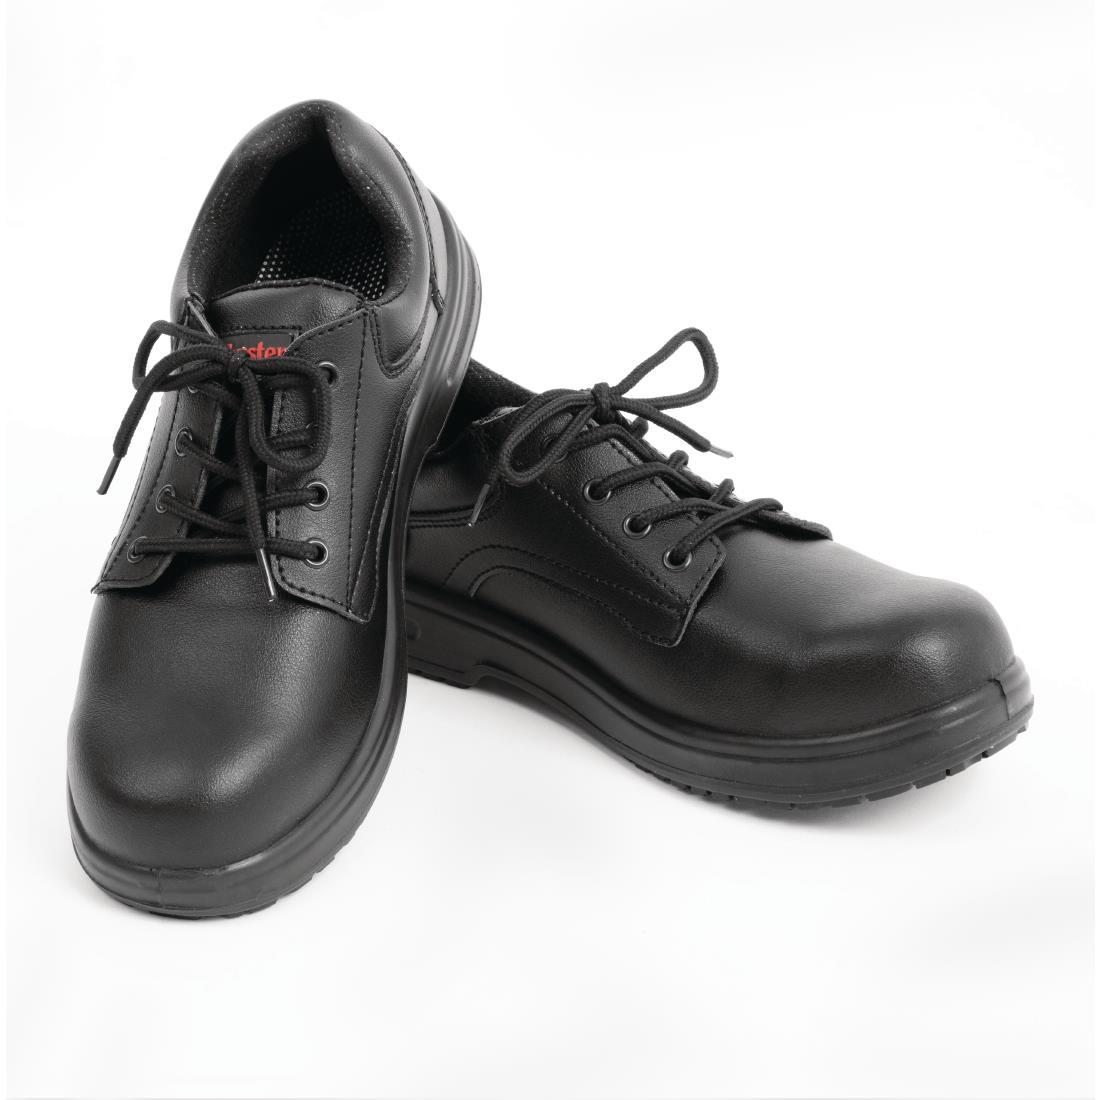 Slipbuster Basic Shoes Slip Resistant Black 45 - BB498-45  - 4